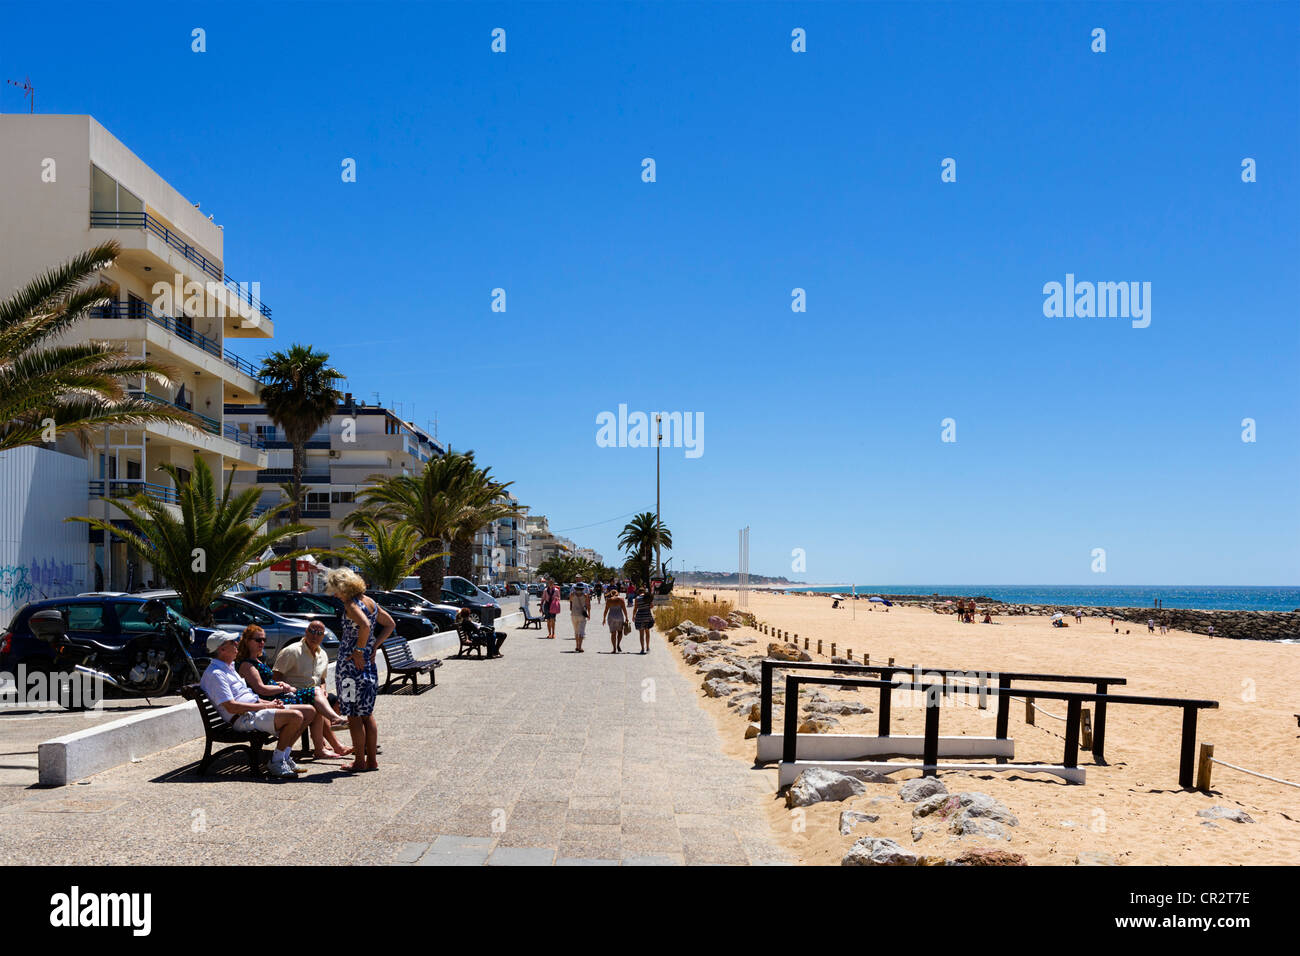 La spiaggia e la passeggiata sul lungomare in Quarteira, Algarve, PORTOGALLO Foto Stock